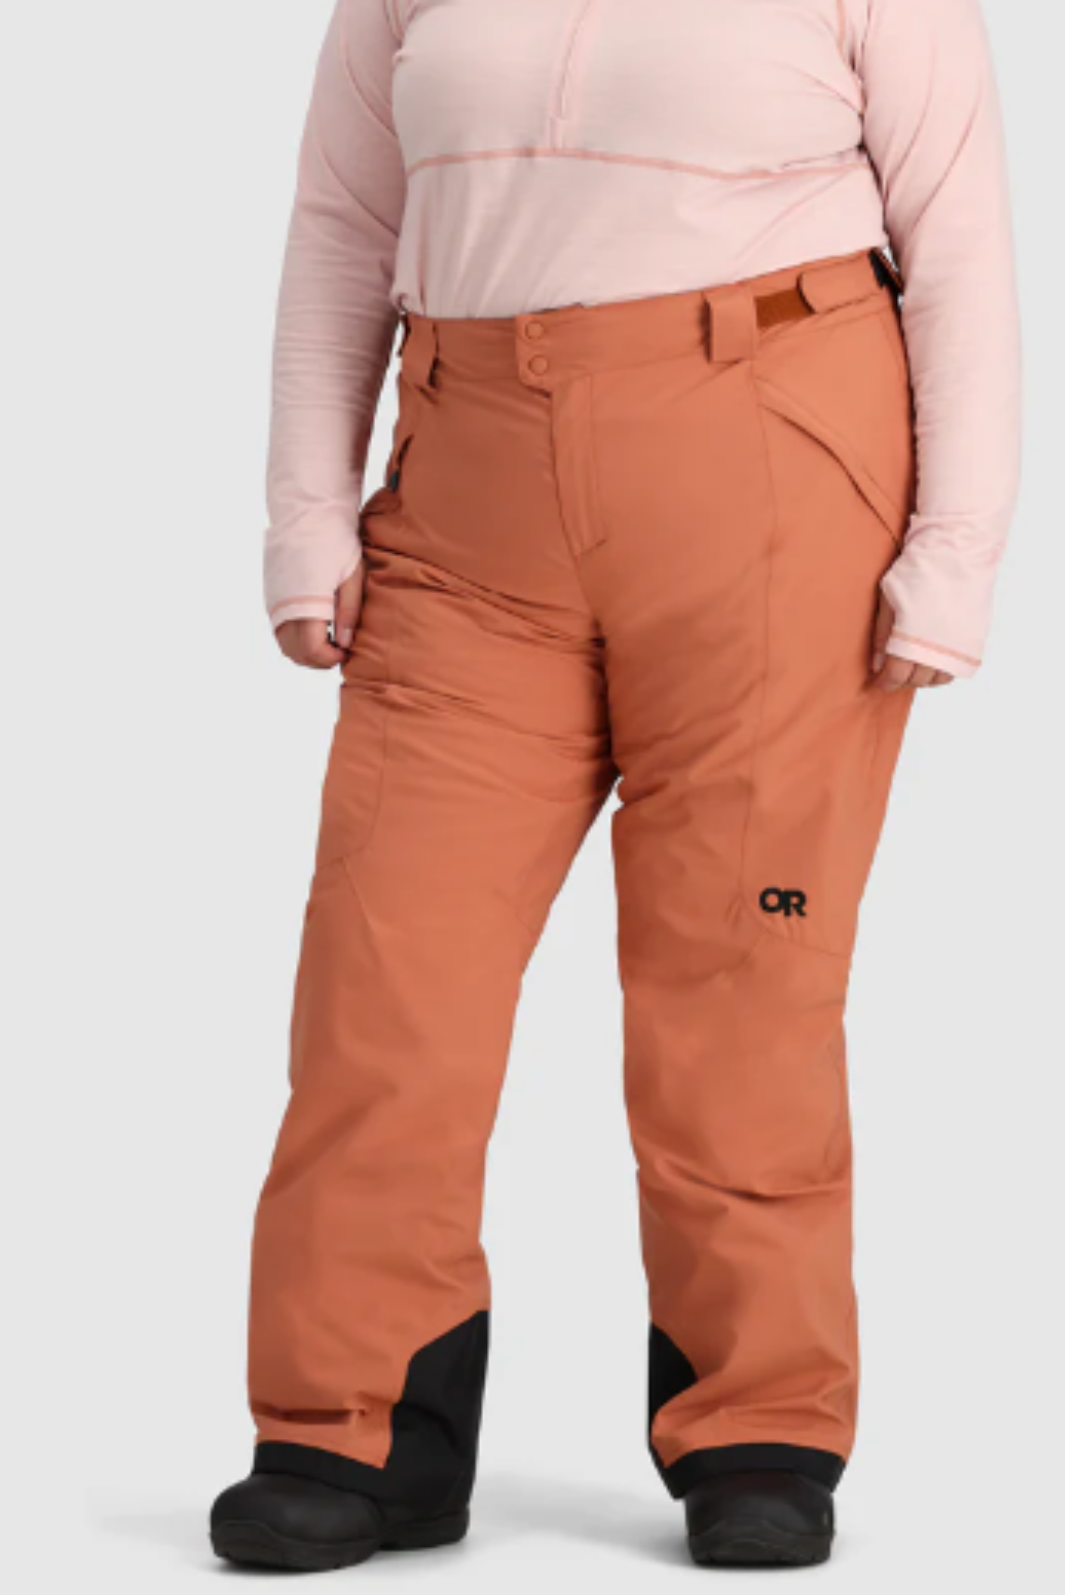 Pantalon isolé Snowcrew Taille Plus d'Outdoor Research